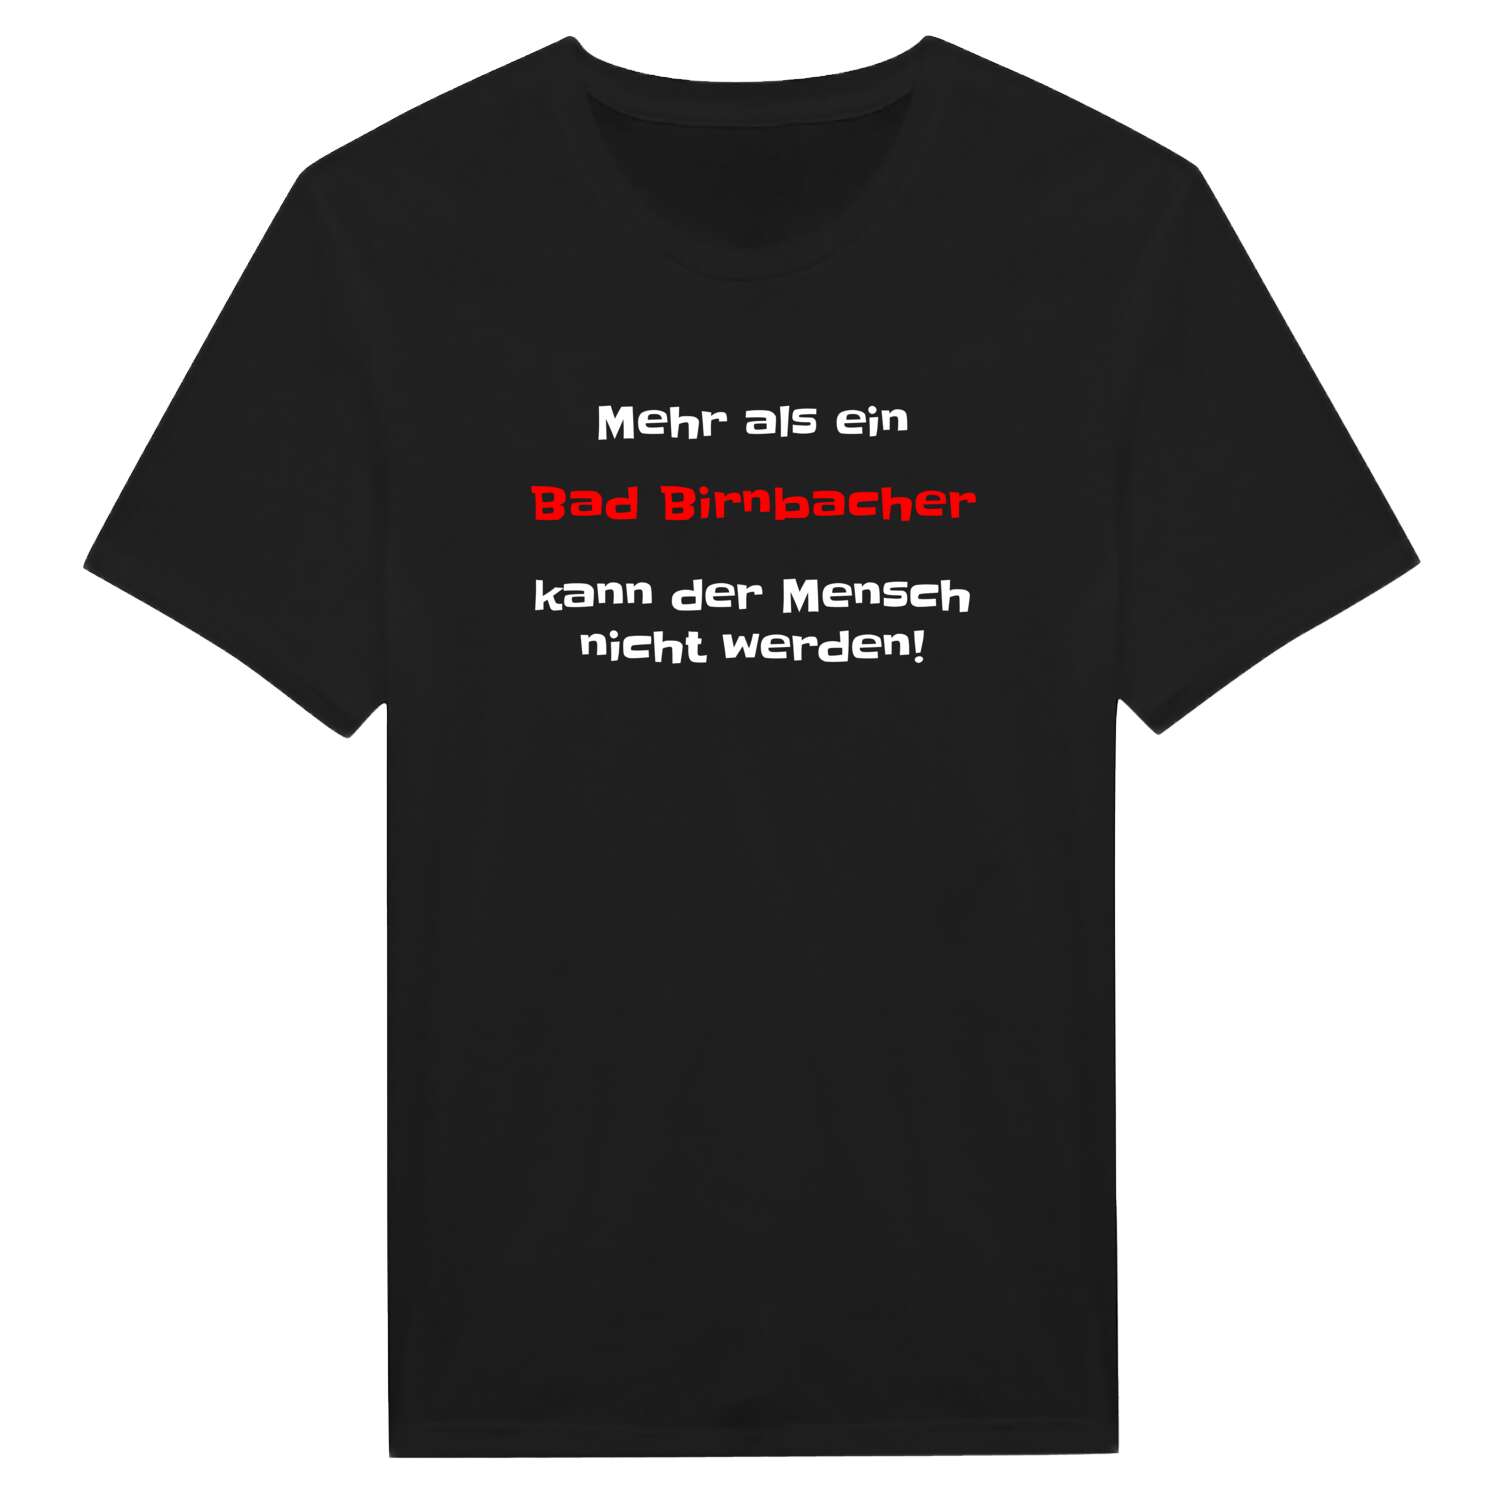 Bad Birnbach T-Shirt »Mehr als ein«